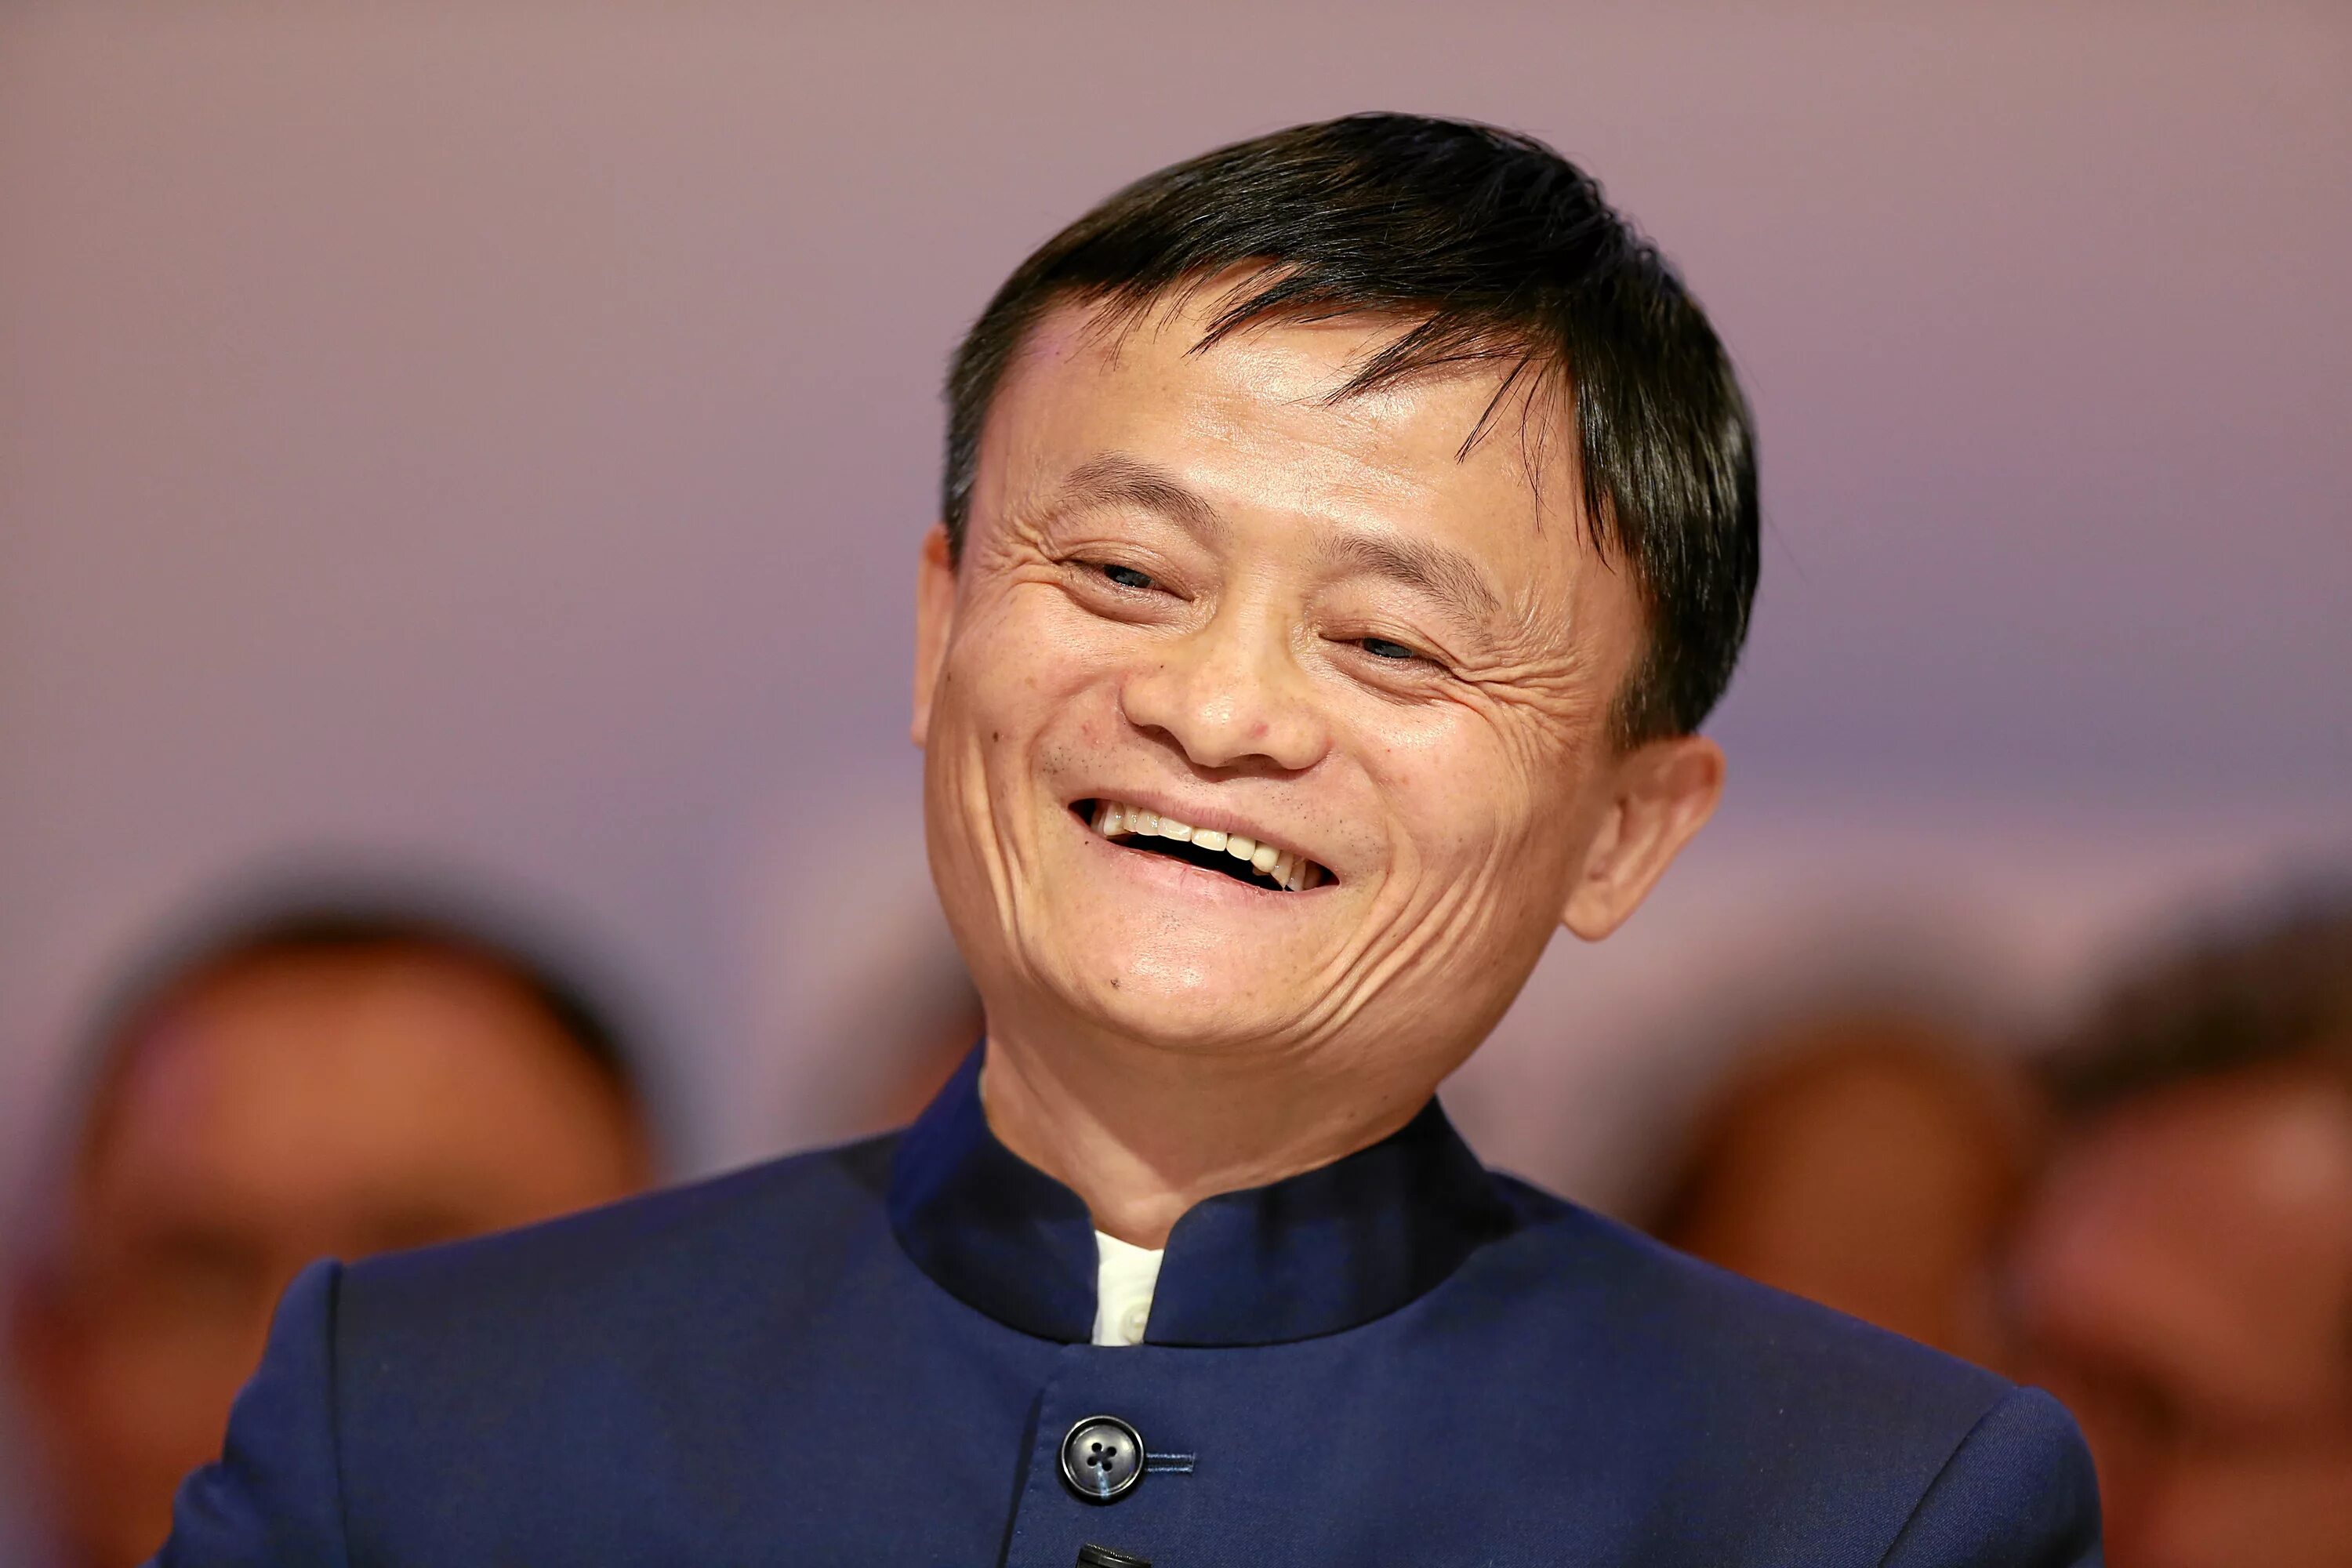 Димаш и Джек ма. Соучредитель Alibaba Group, китайский миллиардер Джек ма. Лицо китайца.